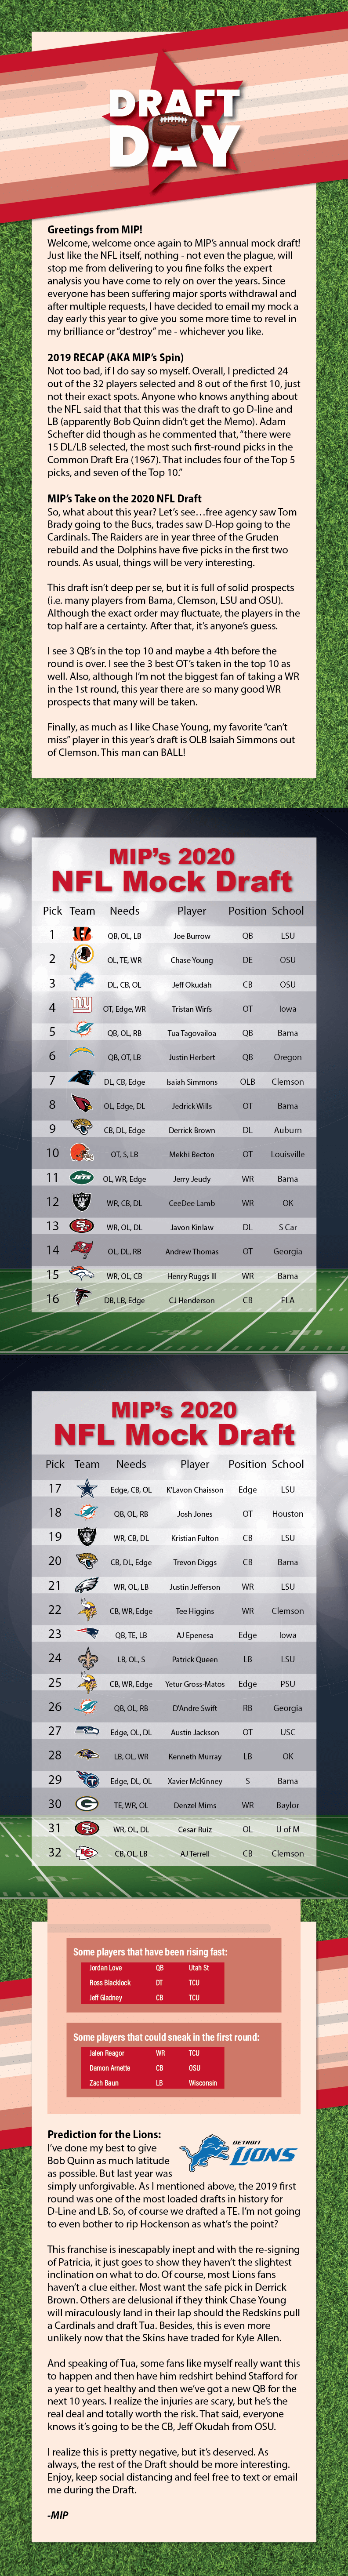 NFL Draft Paletz 2020